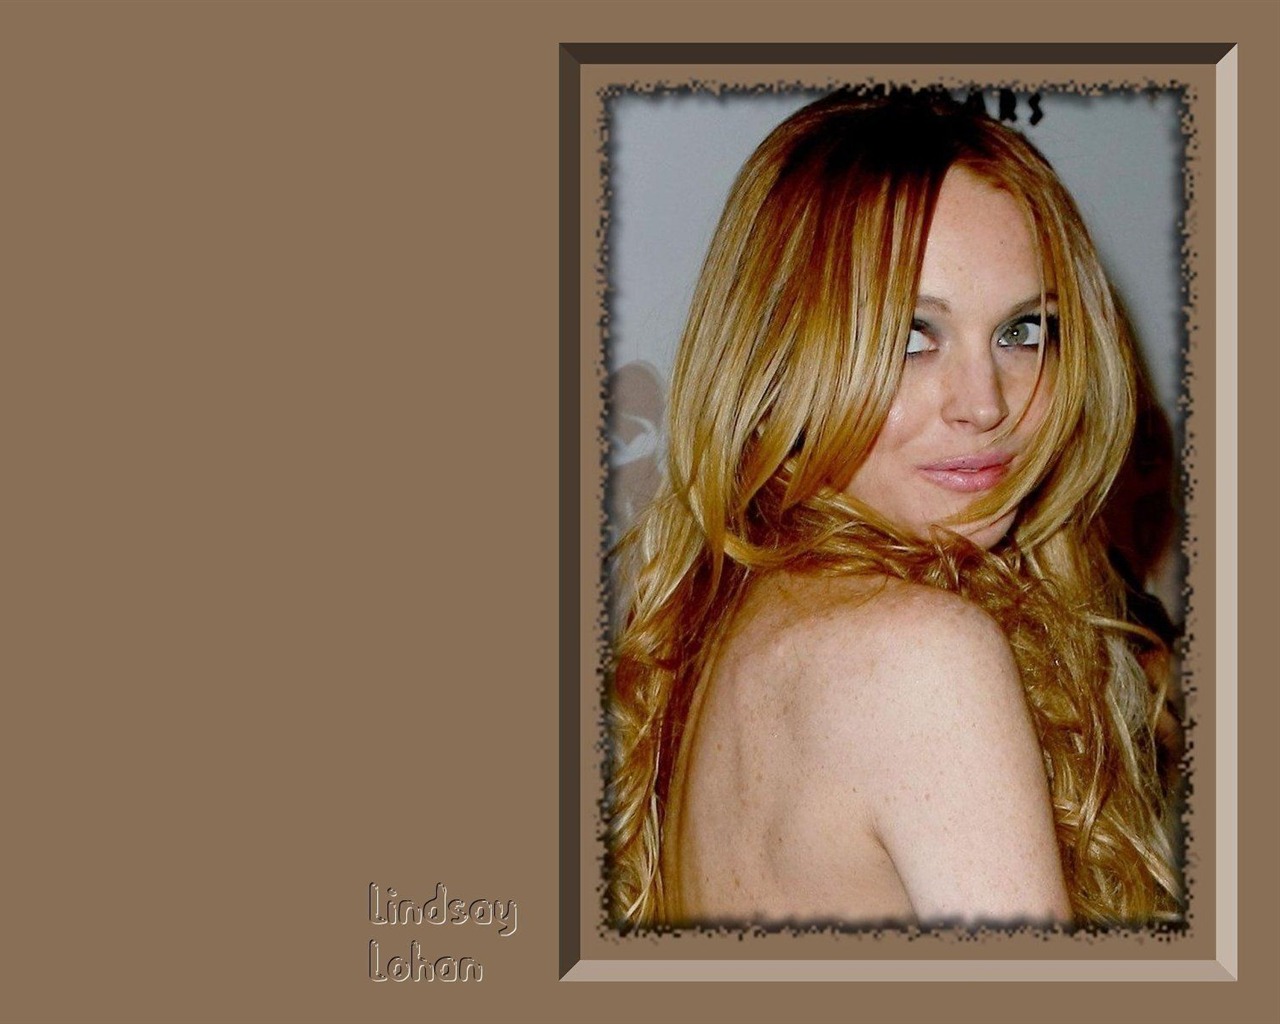 Lindsay Lohan 林賽·羅韓 美女壁紙 #16 - 1280x1024